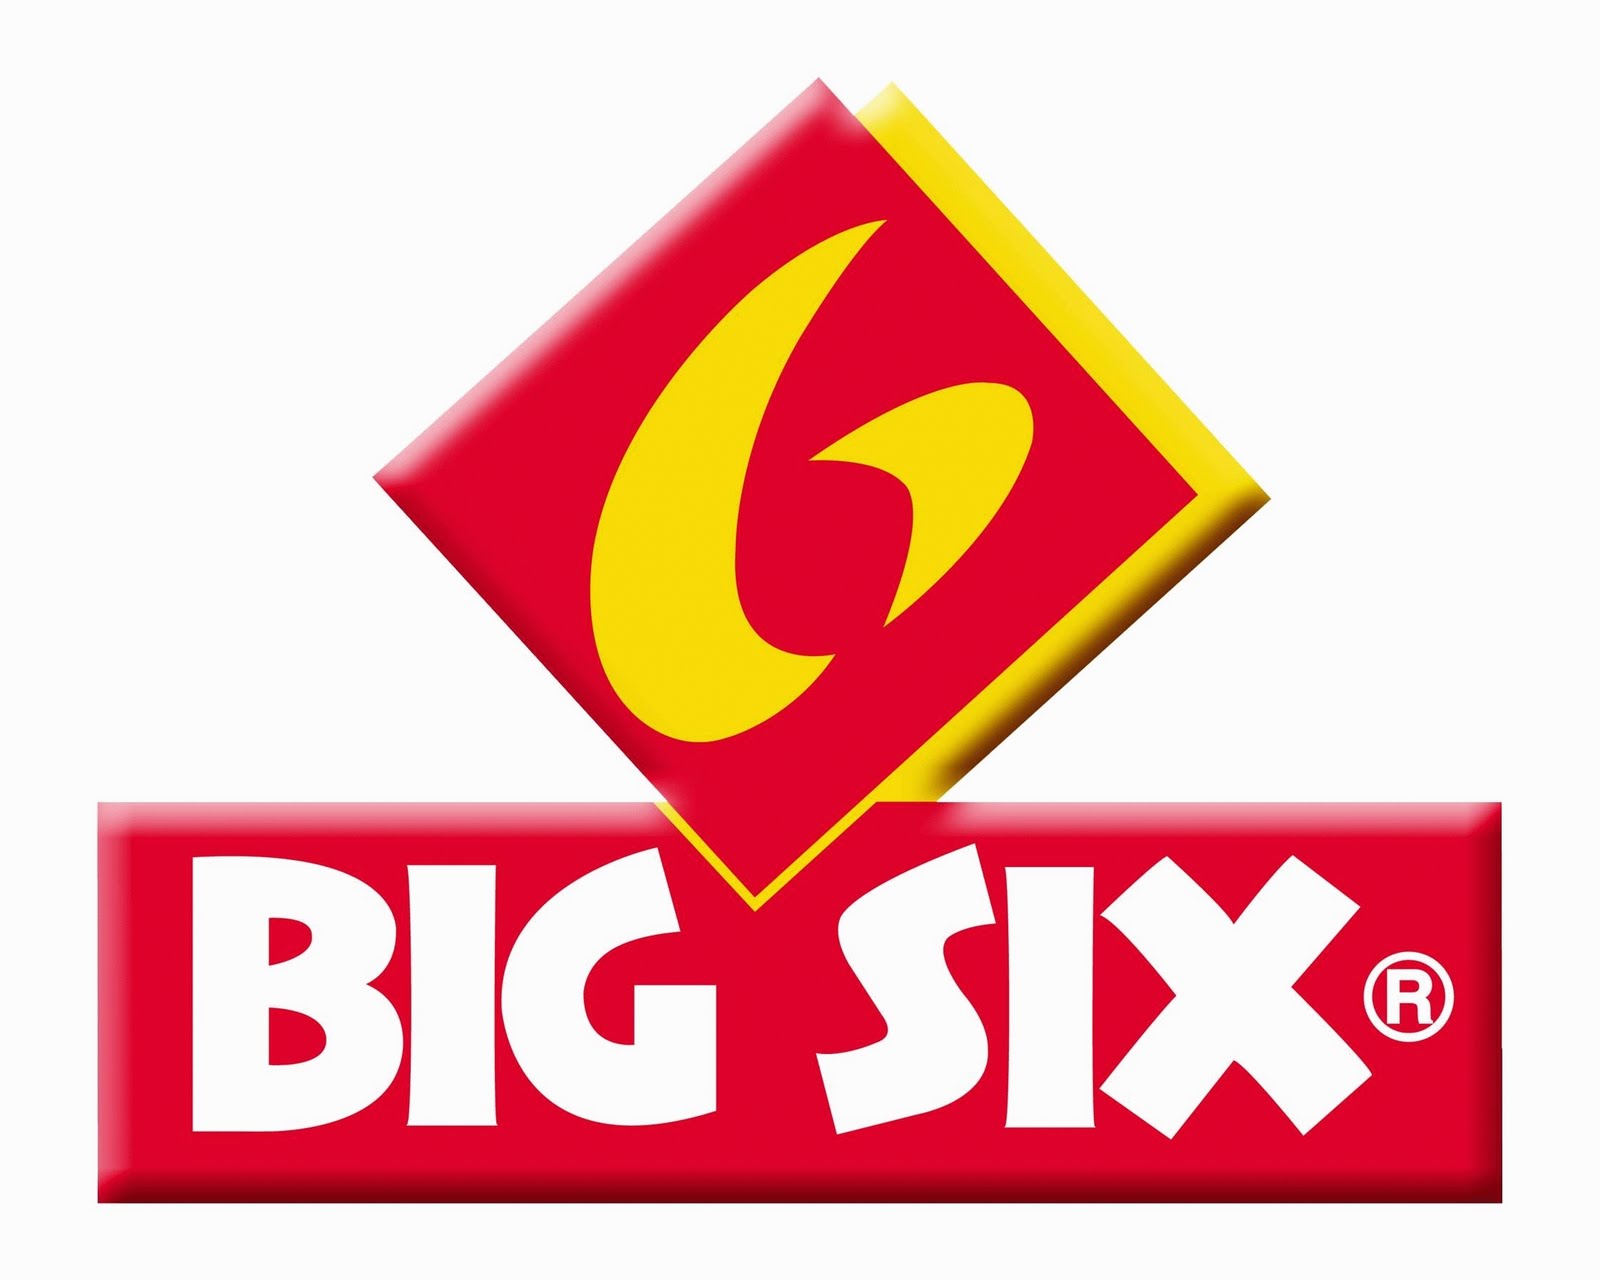 BIG SIX